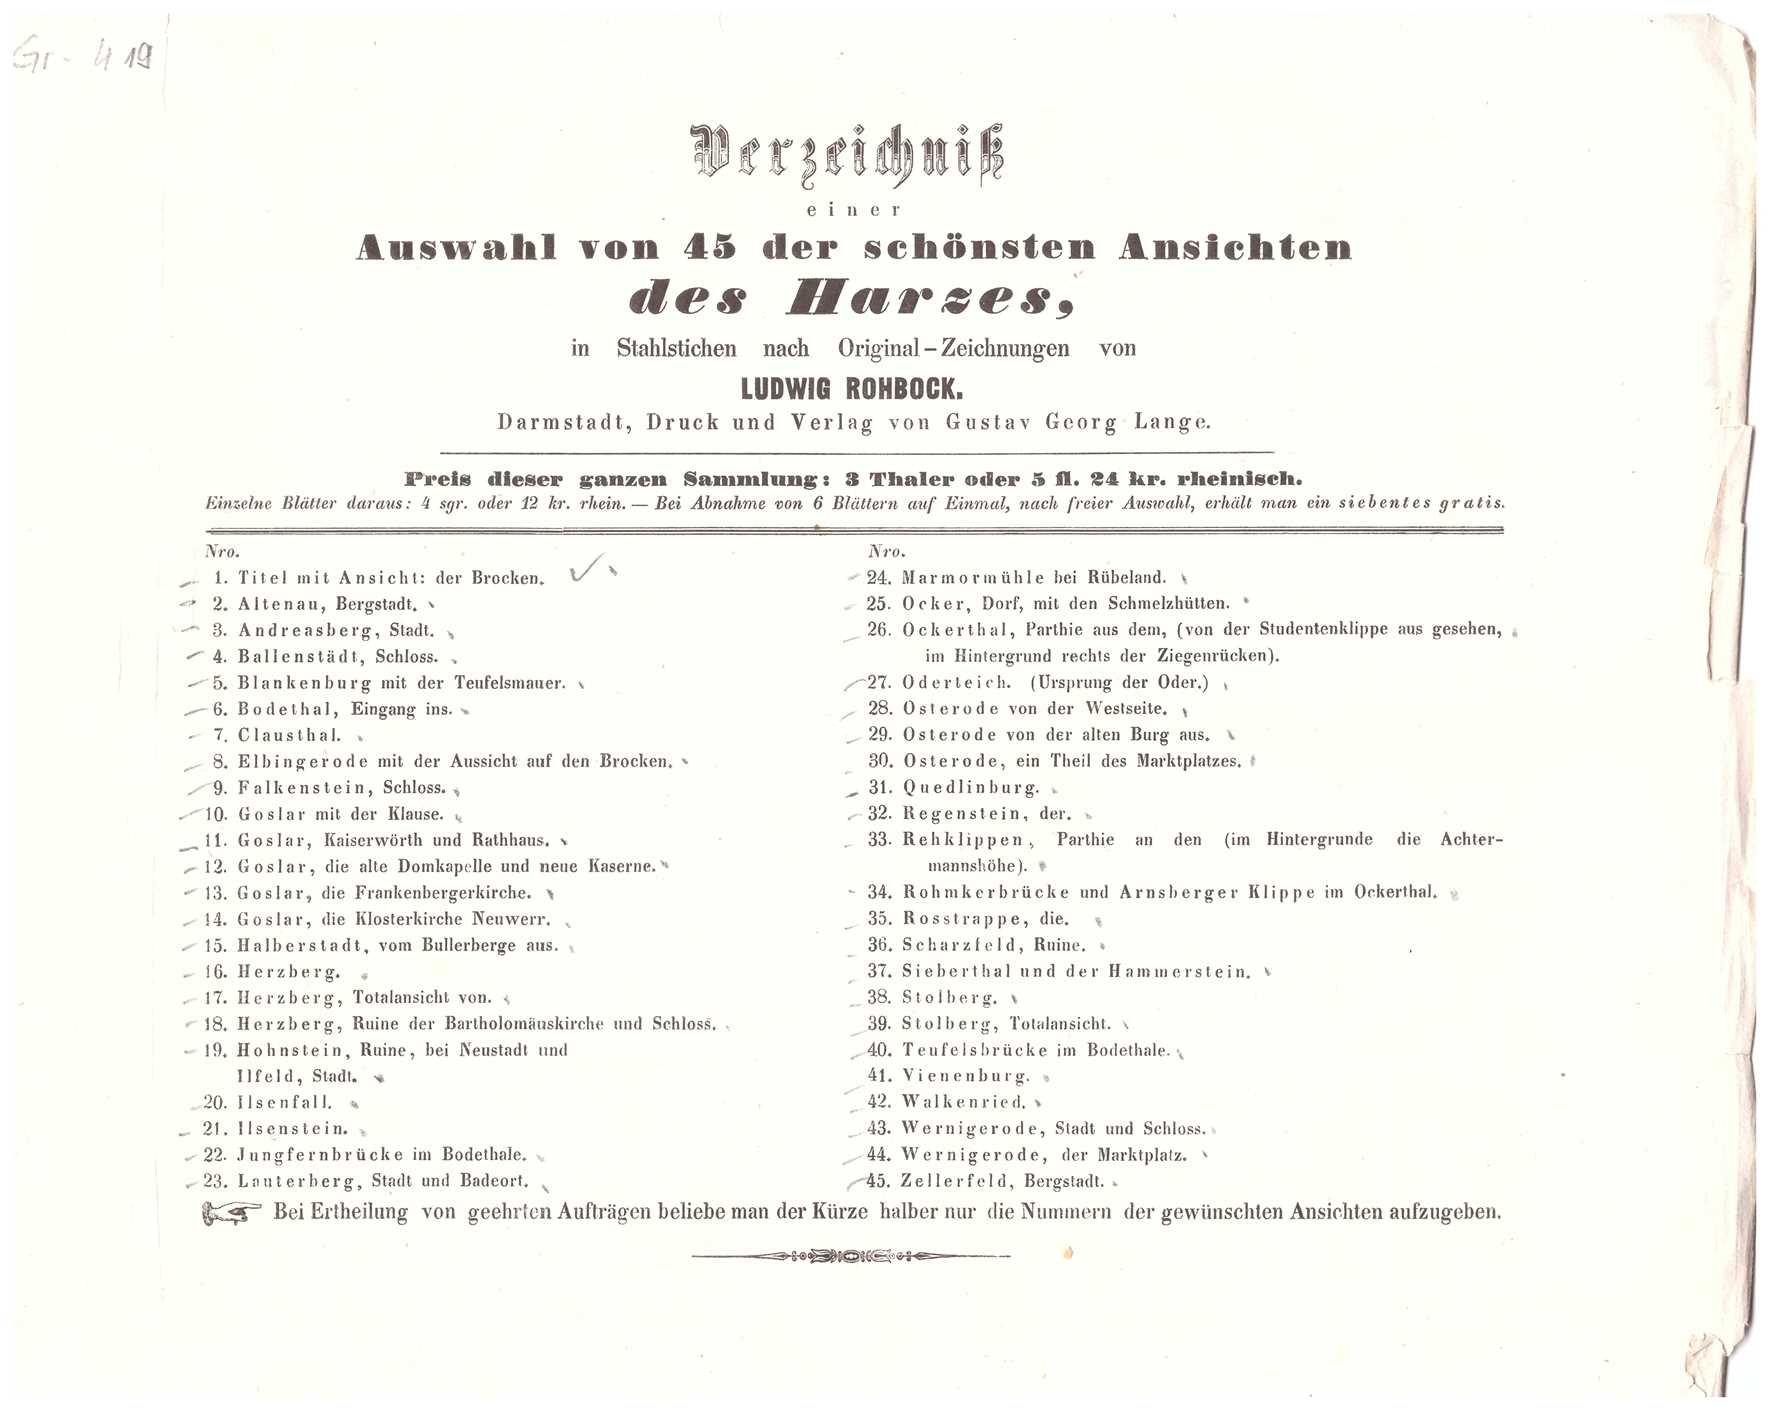 Harz: Inhaltsverzeichnis für "Der Harz in Originalansichten", bei Lange in Darmstadt, 1854 (Schloß Wernigerode GmbH RR-F)